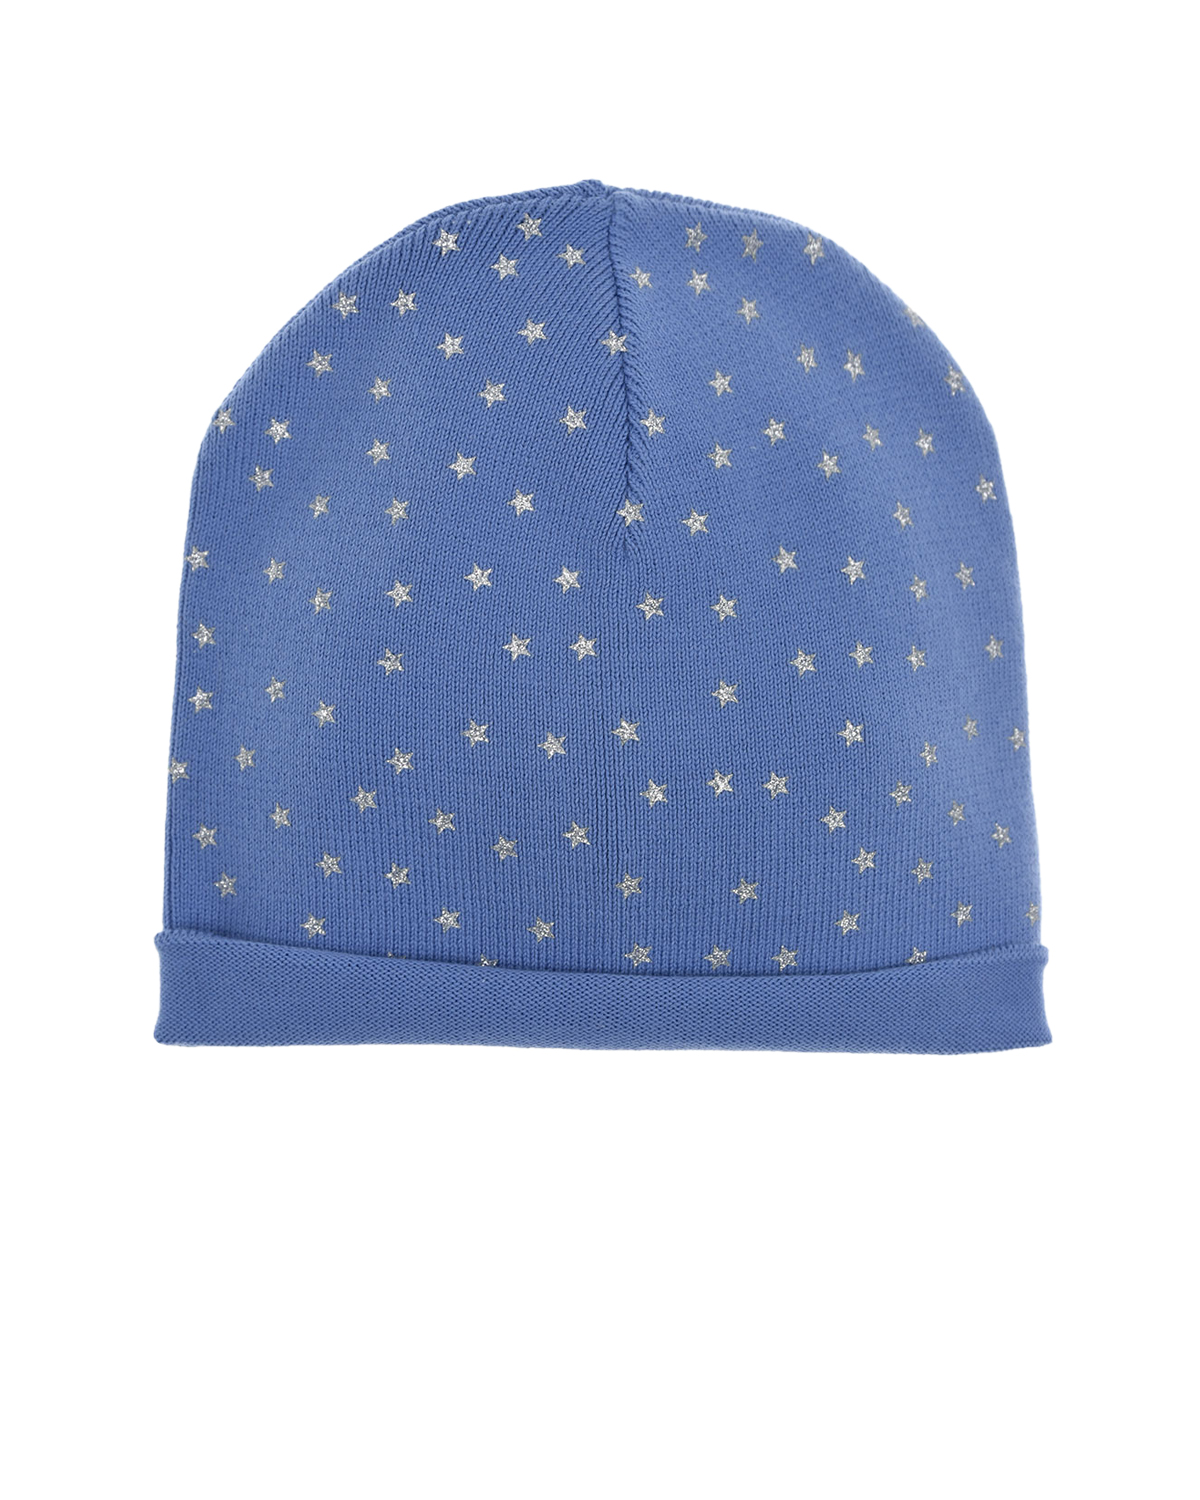 Голубая шапка с серебристыми звездочками Regina детская, размер 51, цвет голубой - фото 1